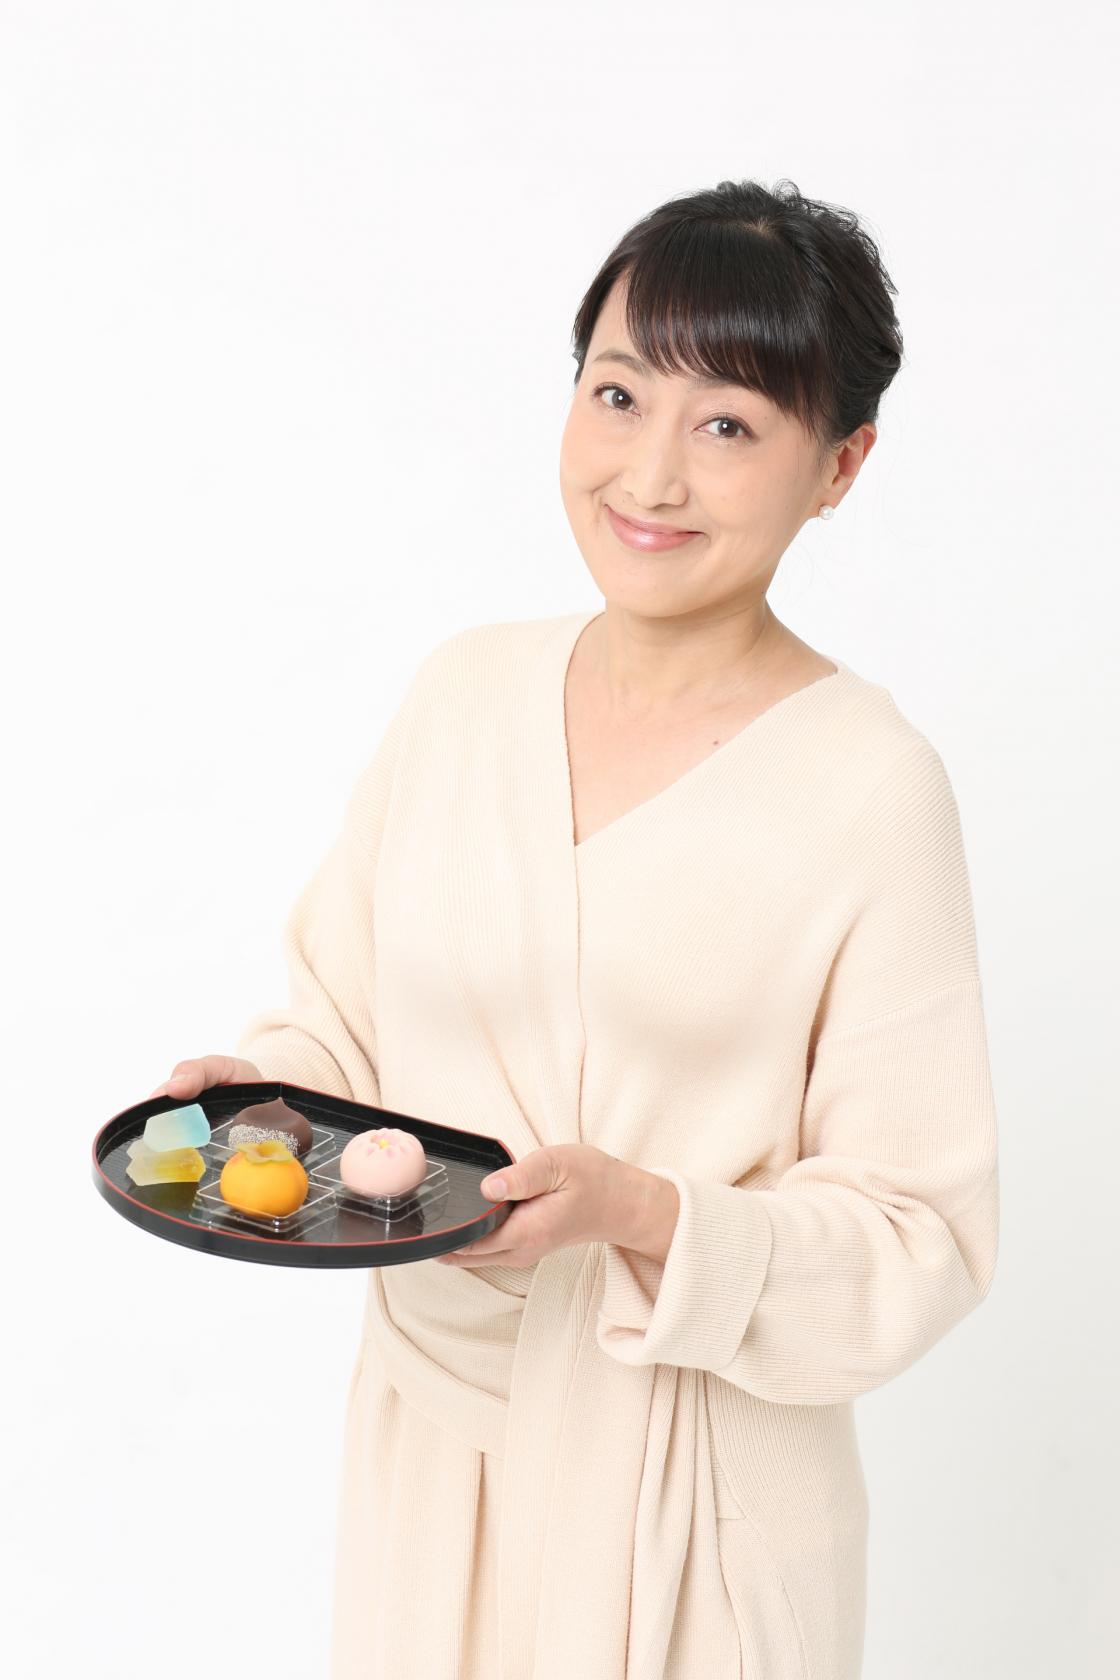 Toshiko Sugii Steffes, a Japanese sweets "WAGASHI" designer